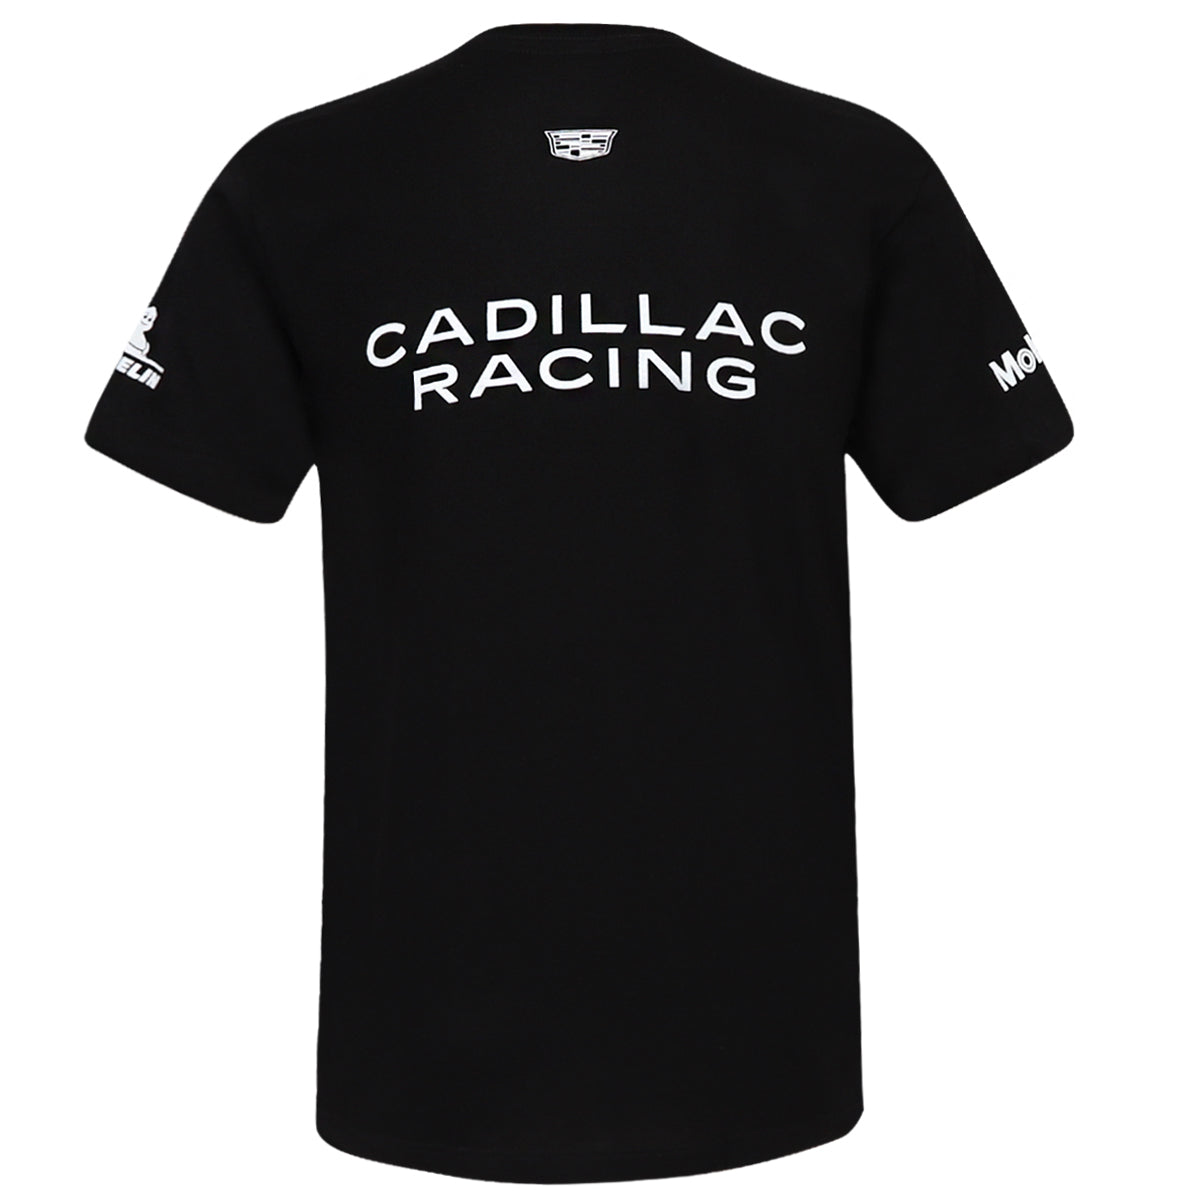 CADILLAC RACING BLACK TEE